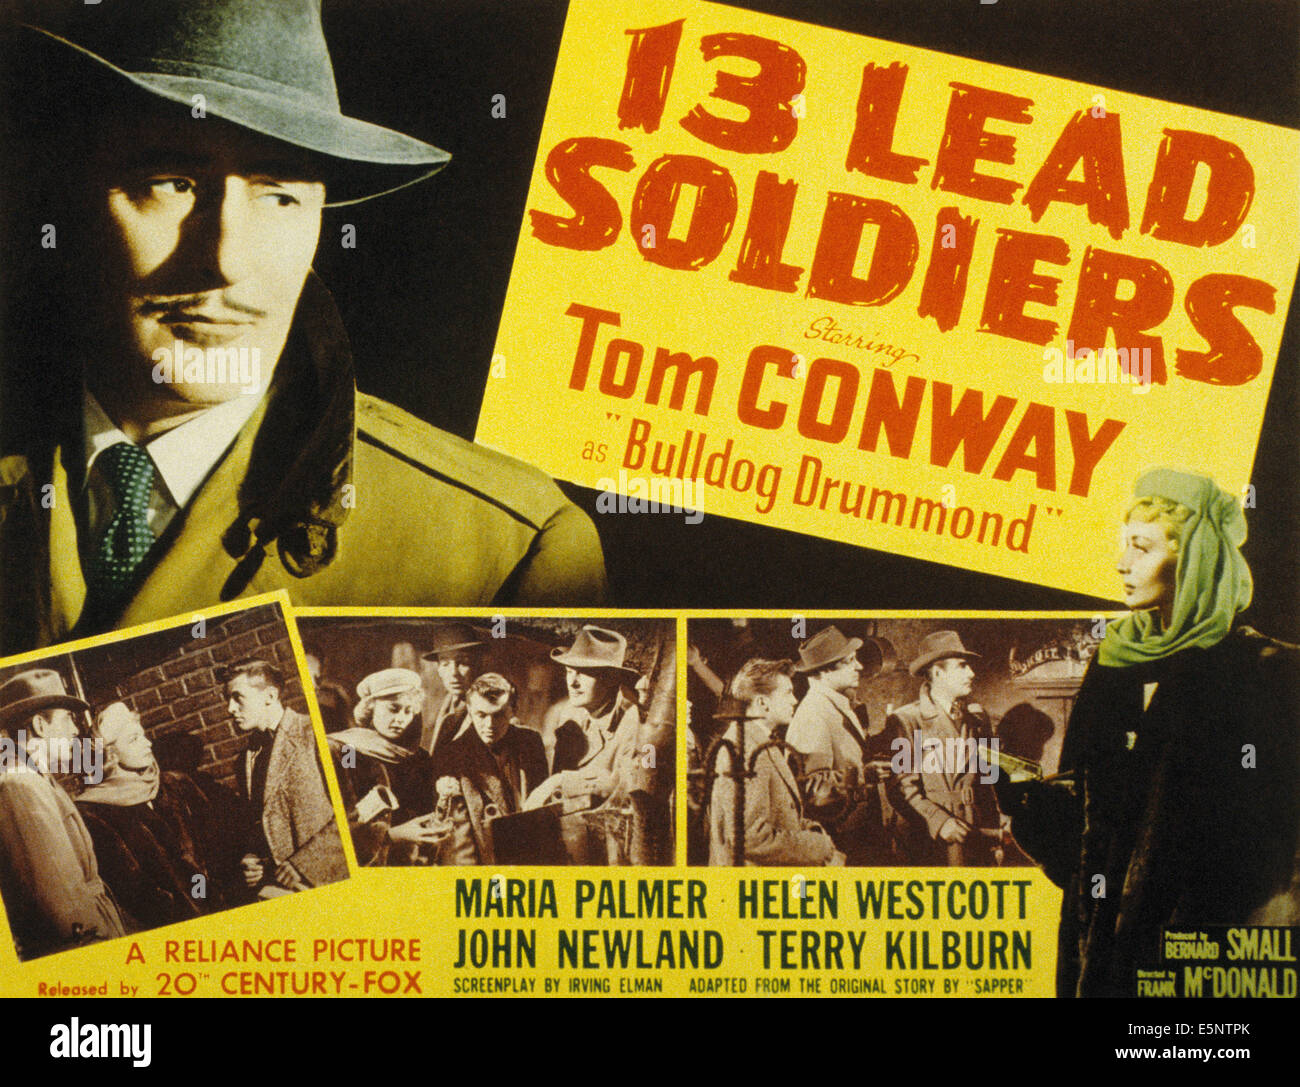 13 führen Soldaten, Tom Conway, (als Bulldog Drummond), 1948, TM und Copyright © 20. Century Fox Film Corp. Alle Rechte vorbehalten / Stockfoto